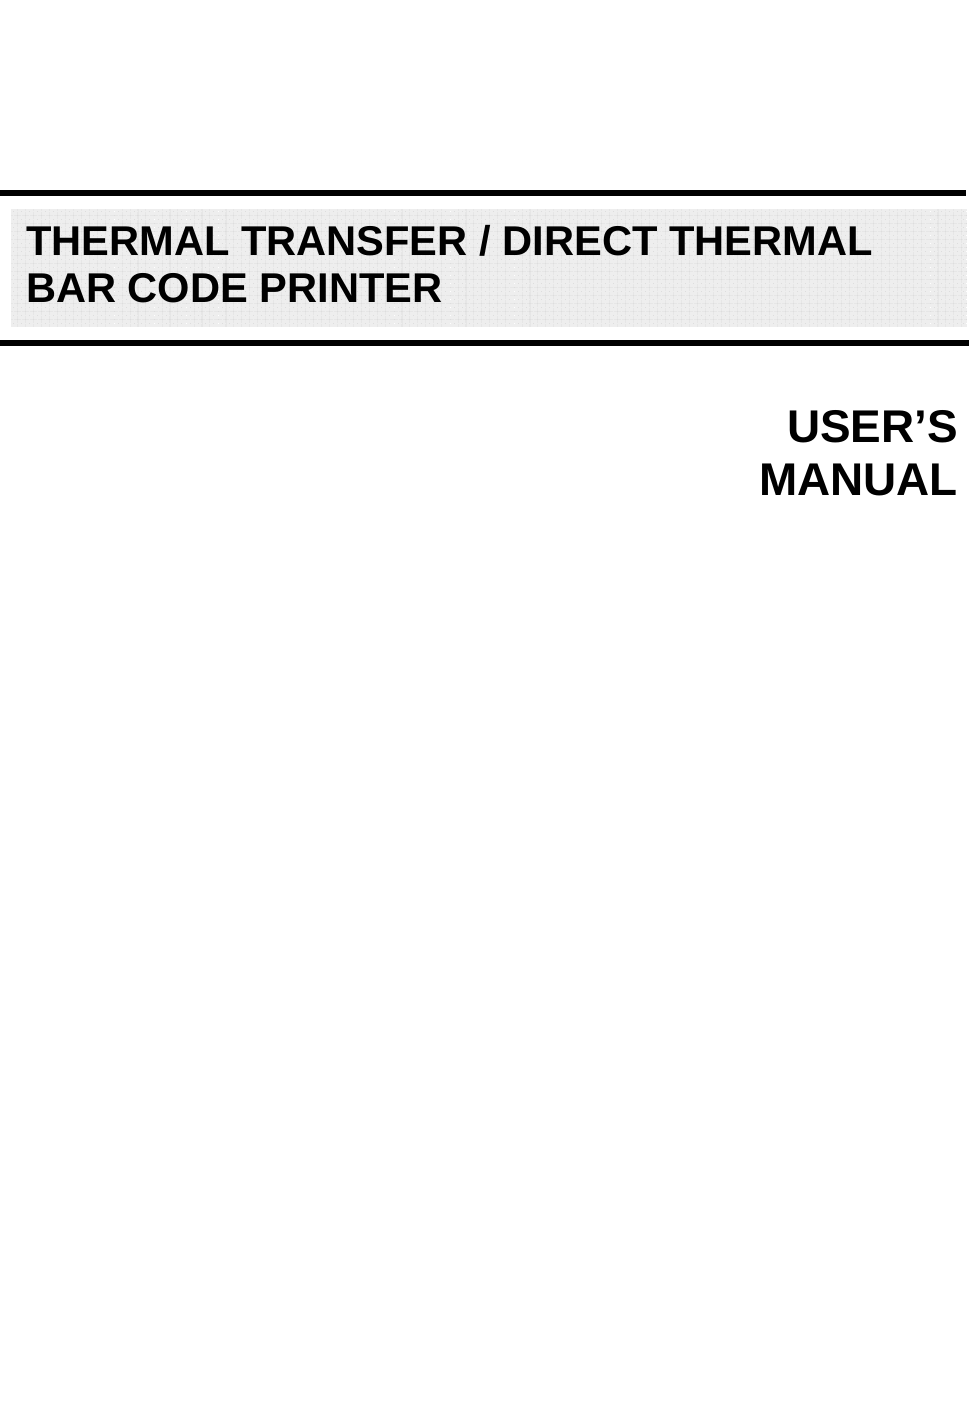                                    USER’S     MANUALTHERMAL TRANSFER / DIRECT THERMAL BAR CODE PRINTER 